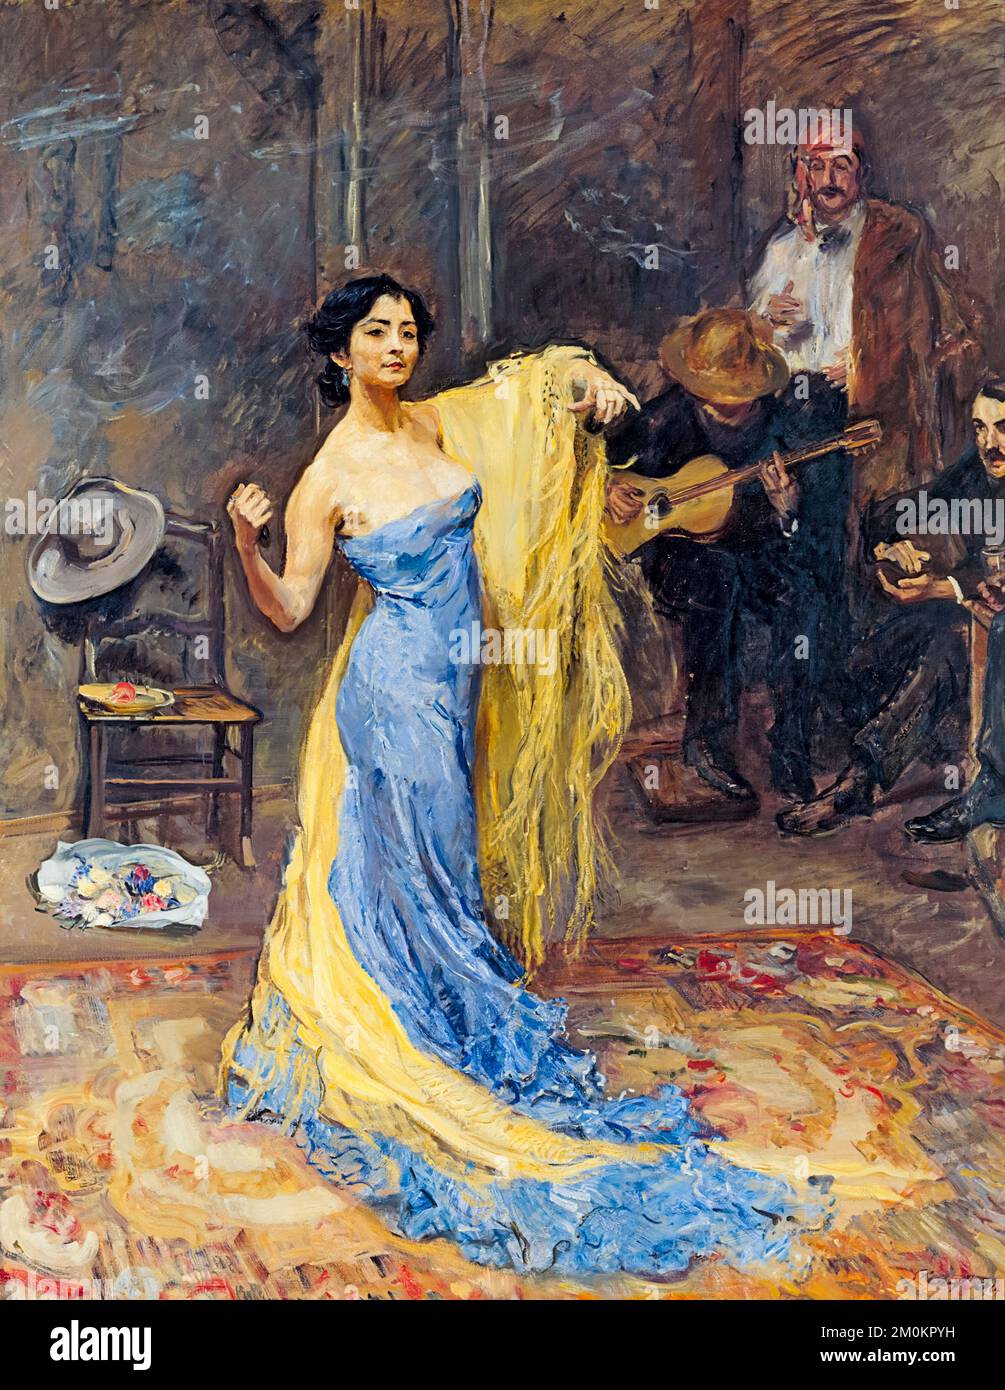 Porträt der Tänzerin Marietta di Rigardo, gemalt in Öl auf Leinwand von Max Slevogt, 1904 Stockfoto